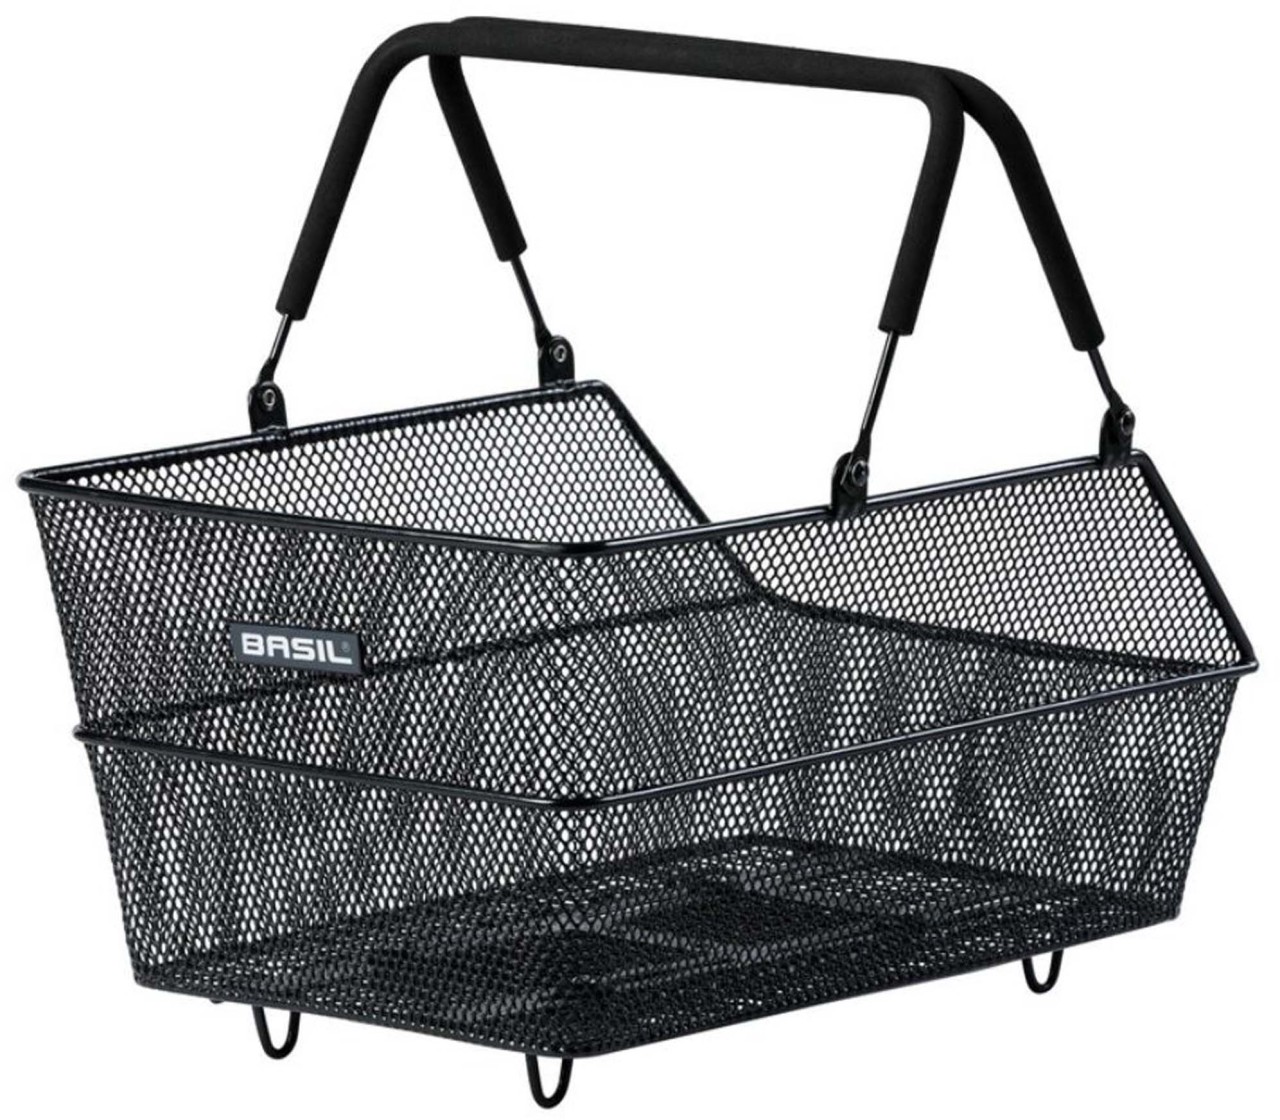 Basil Rear bike basket Cento Mik, 45x33x24 cm, black, narrow mesh